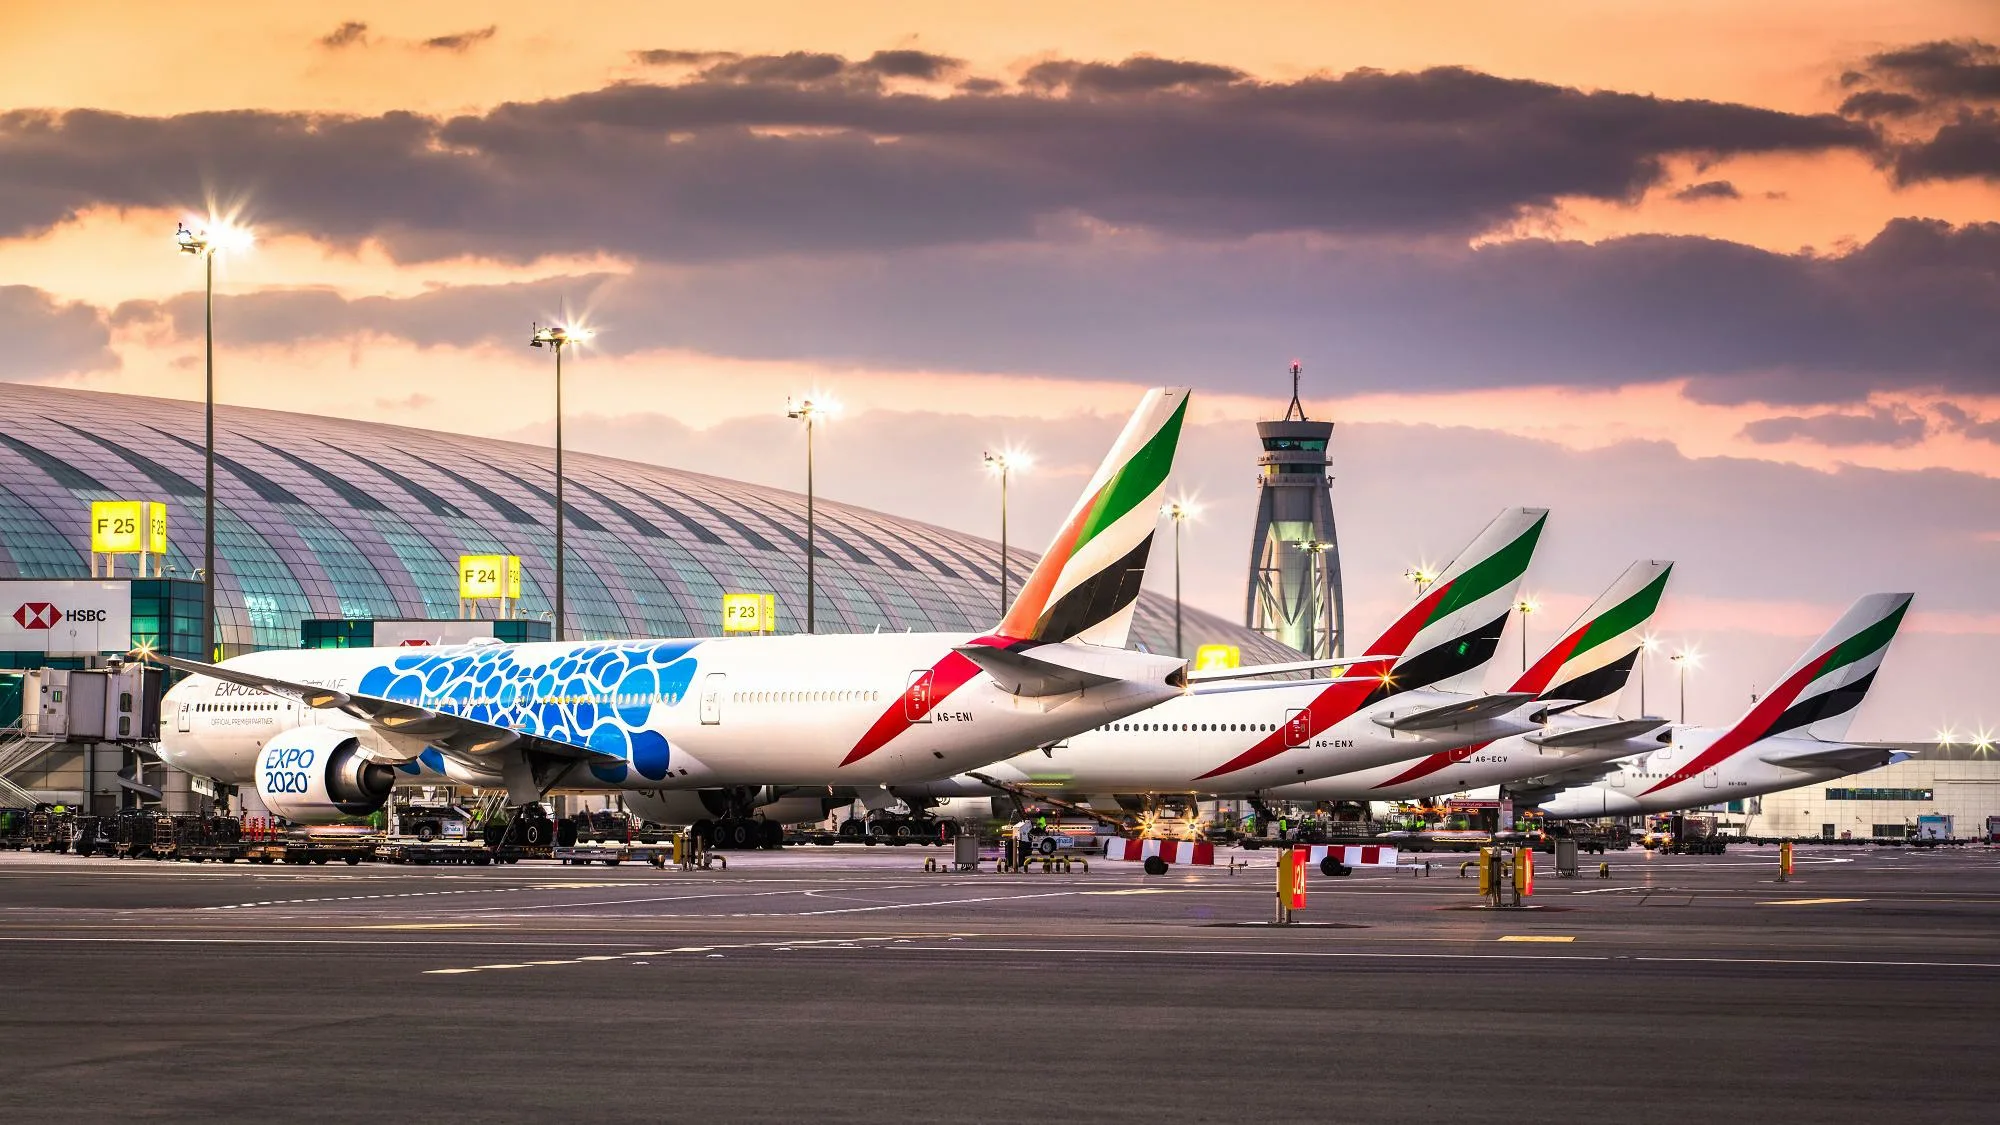 Какие аэропорты мира самые загруженные и занятые?0